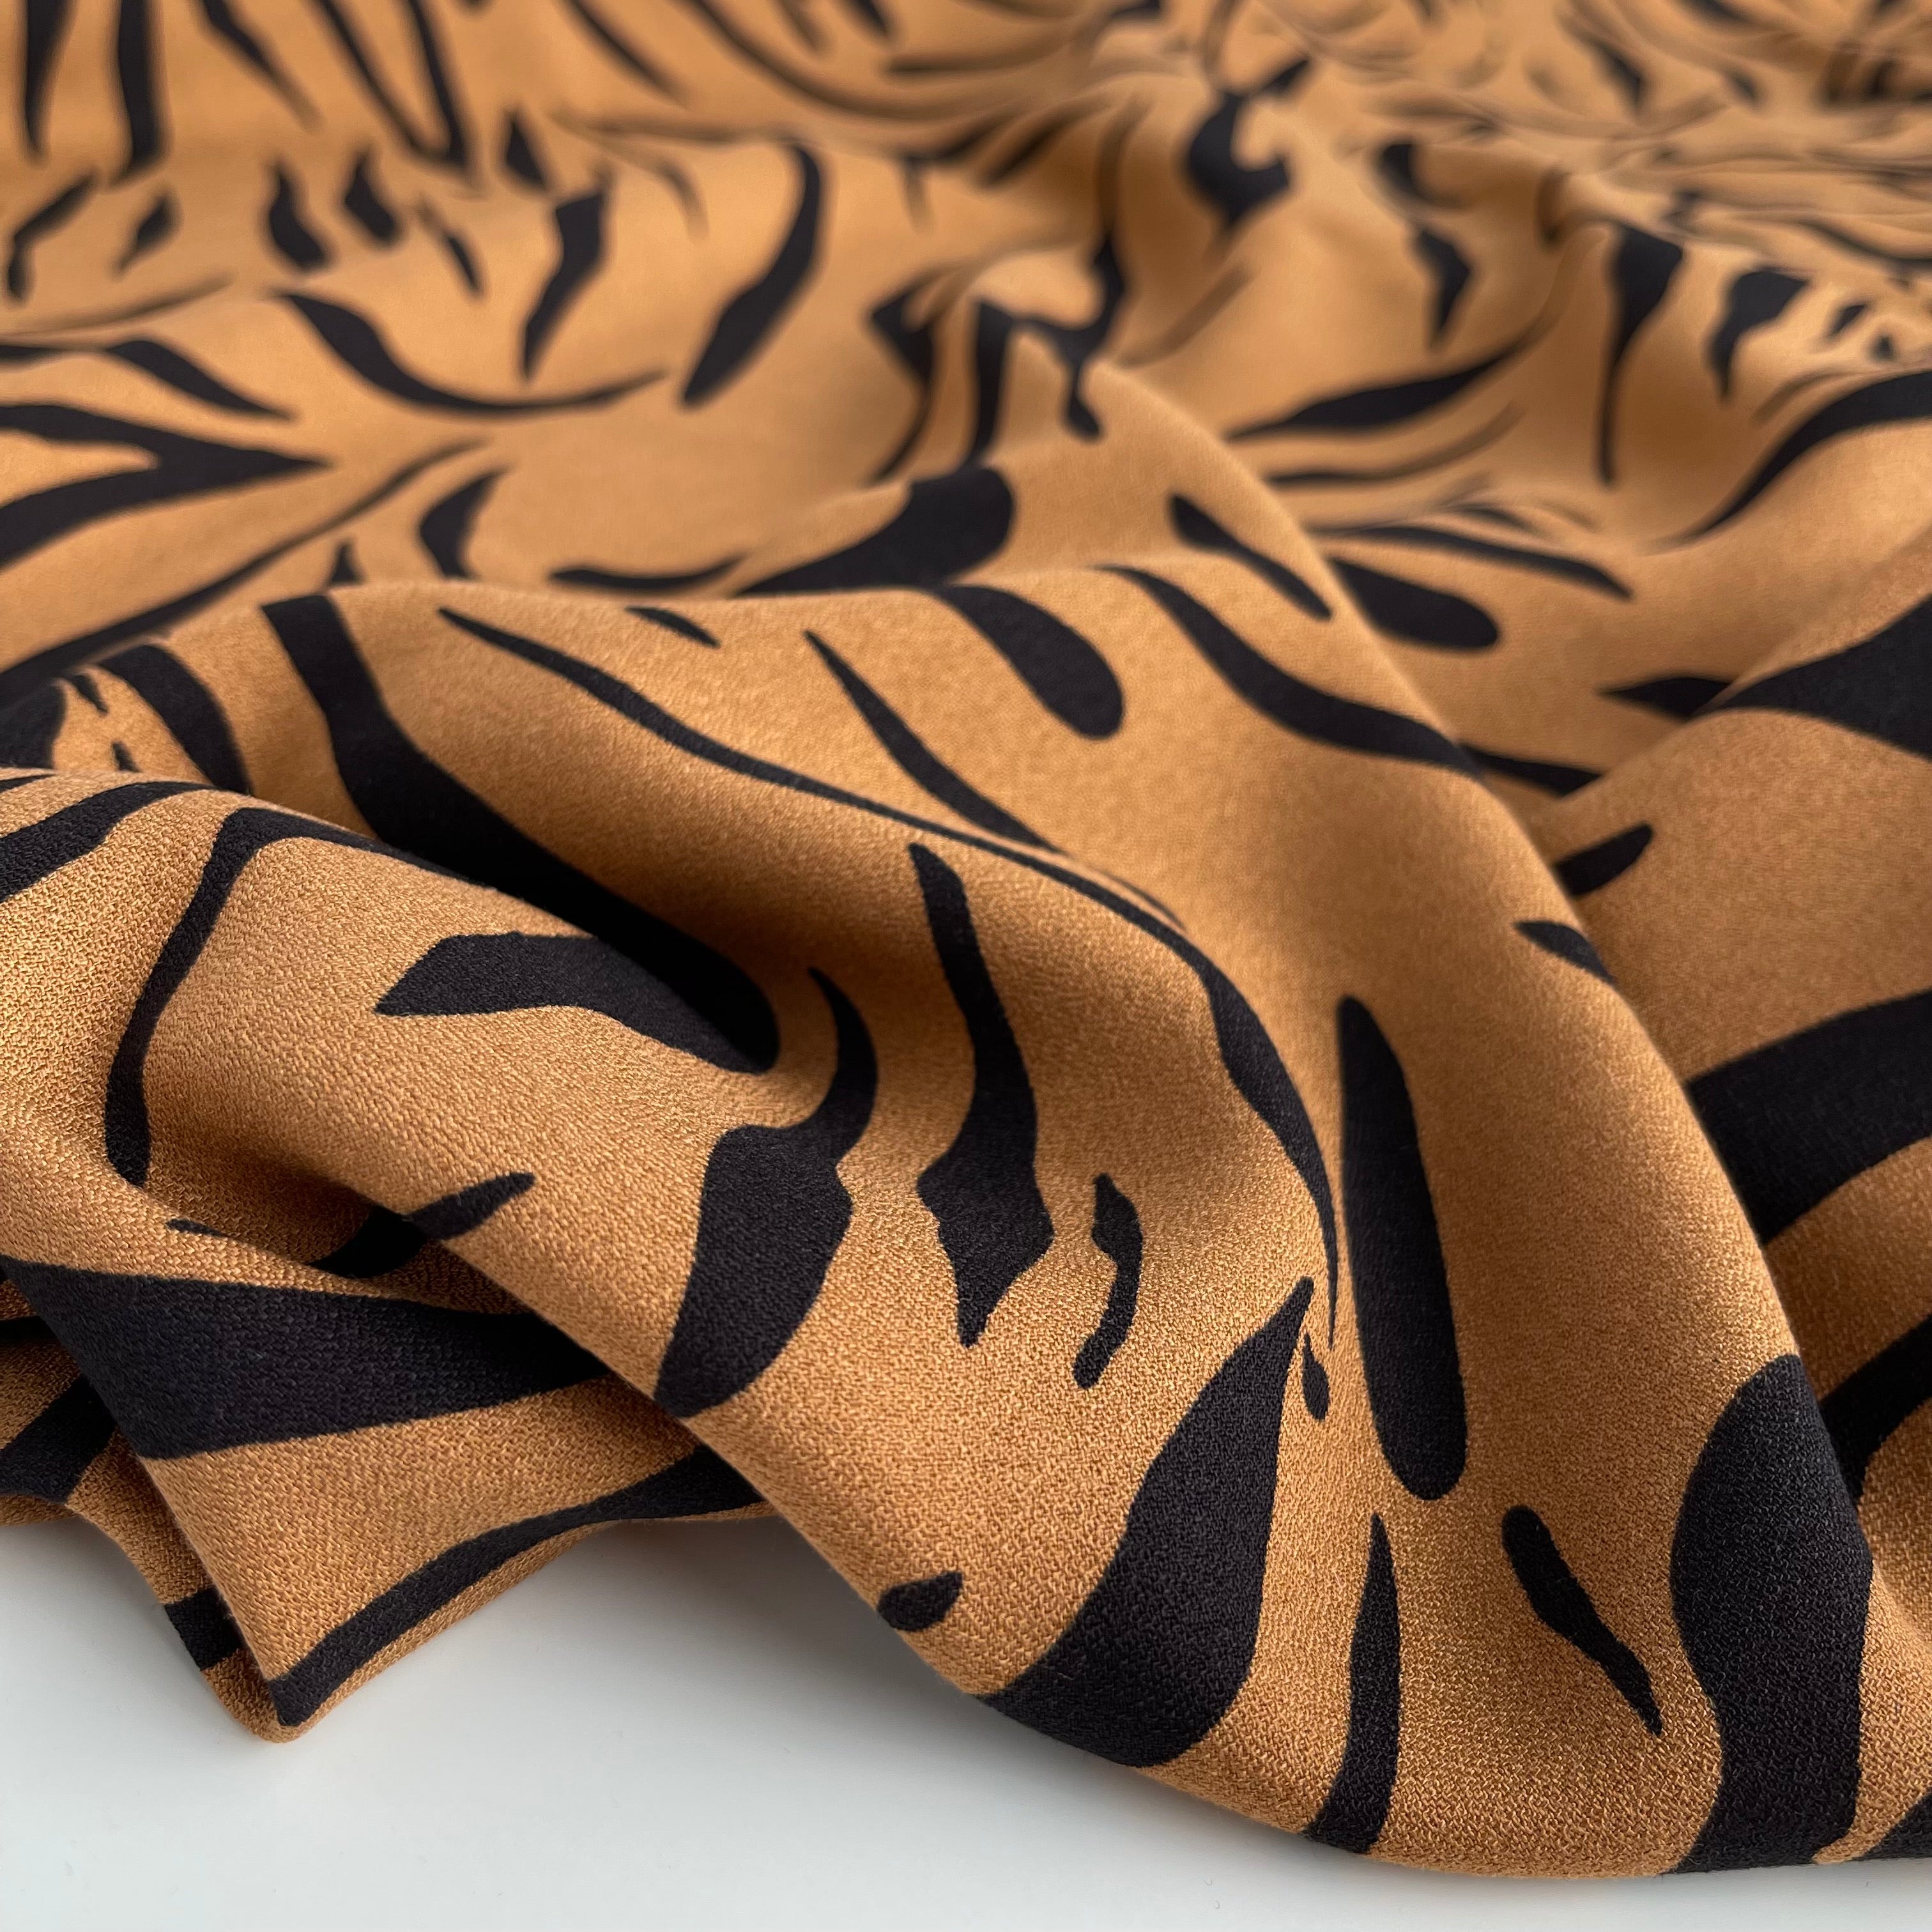 Zebra Camel Soft Viscose Crepe Fabric